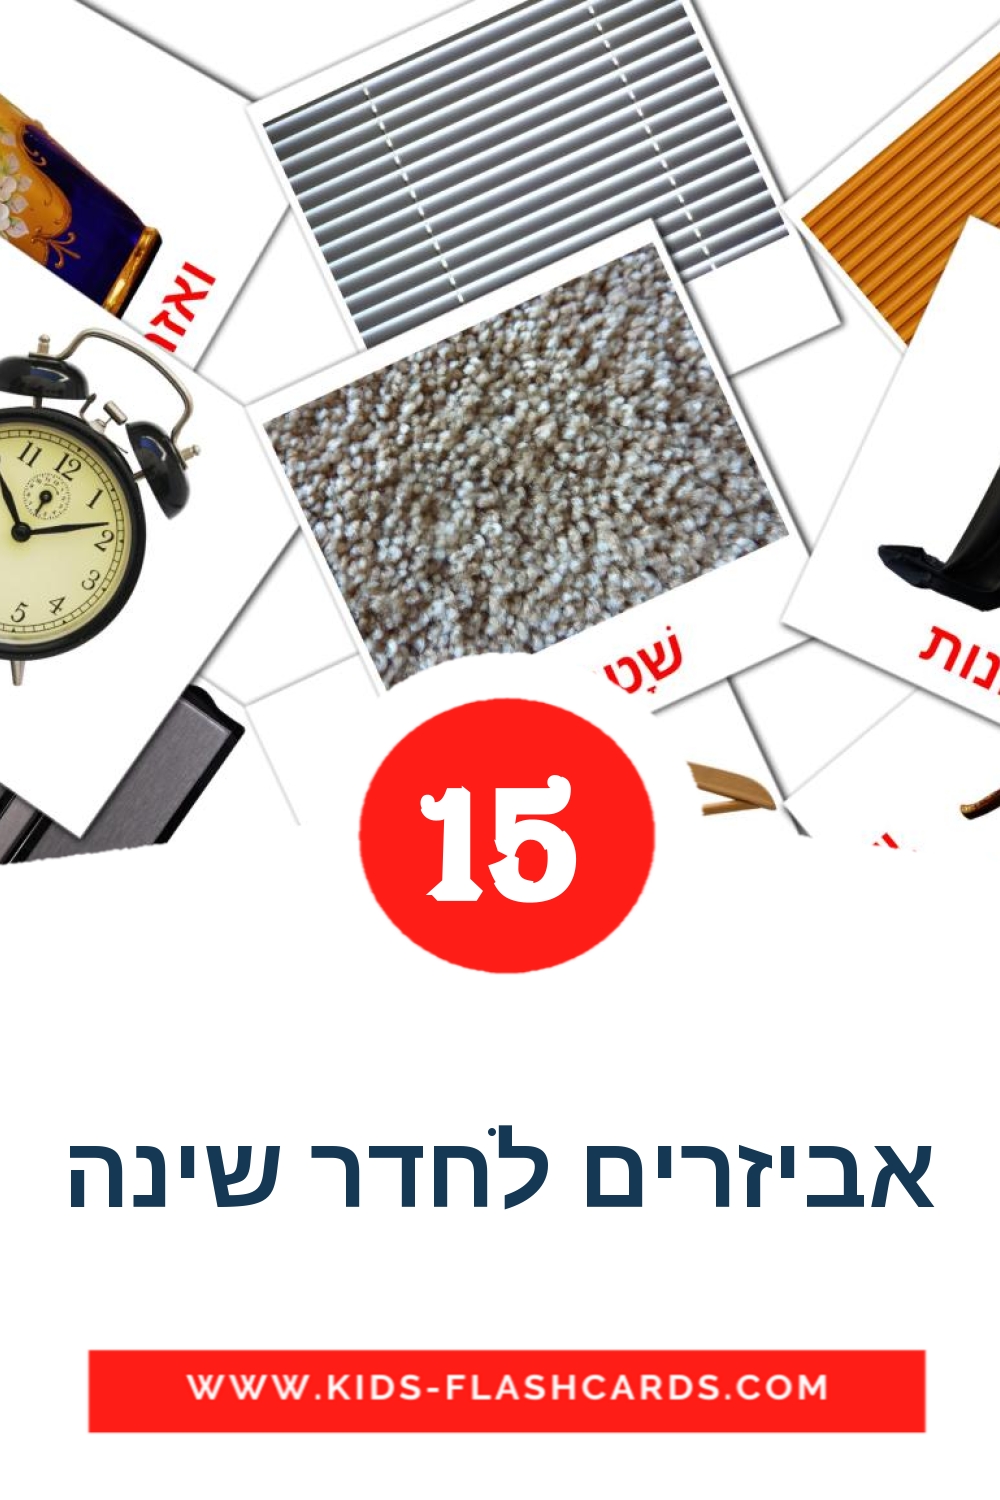 15 Cartões com Imagens de אביזרים לחדר שינה para Jardim de Infância em hebraico